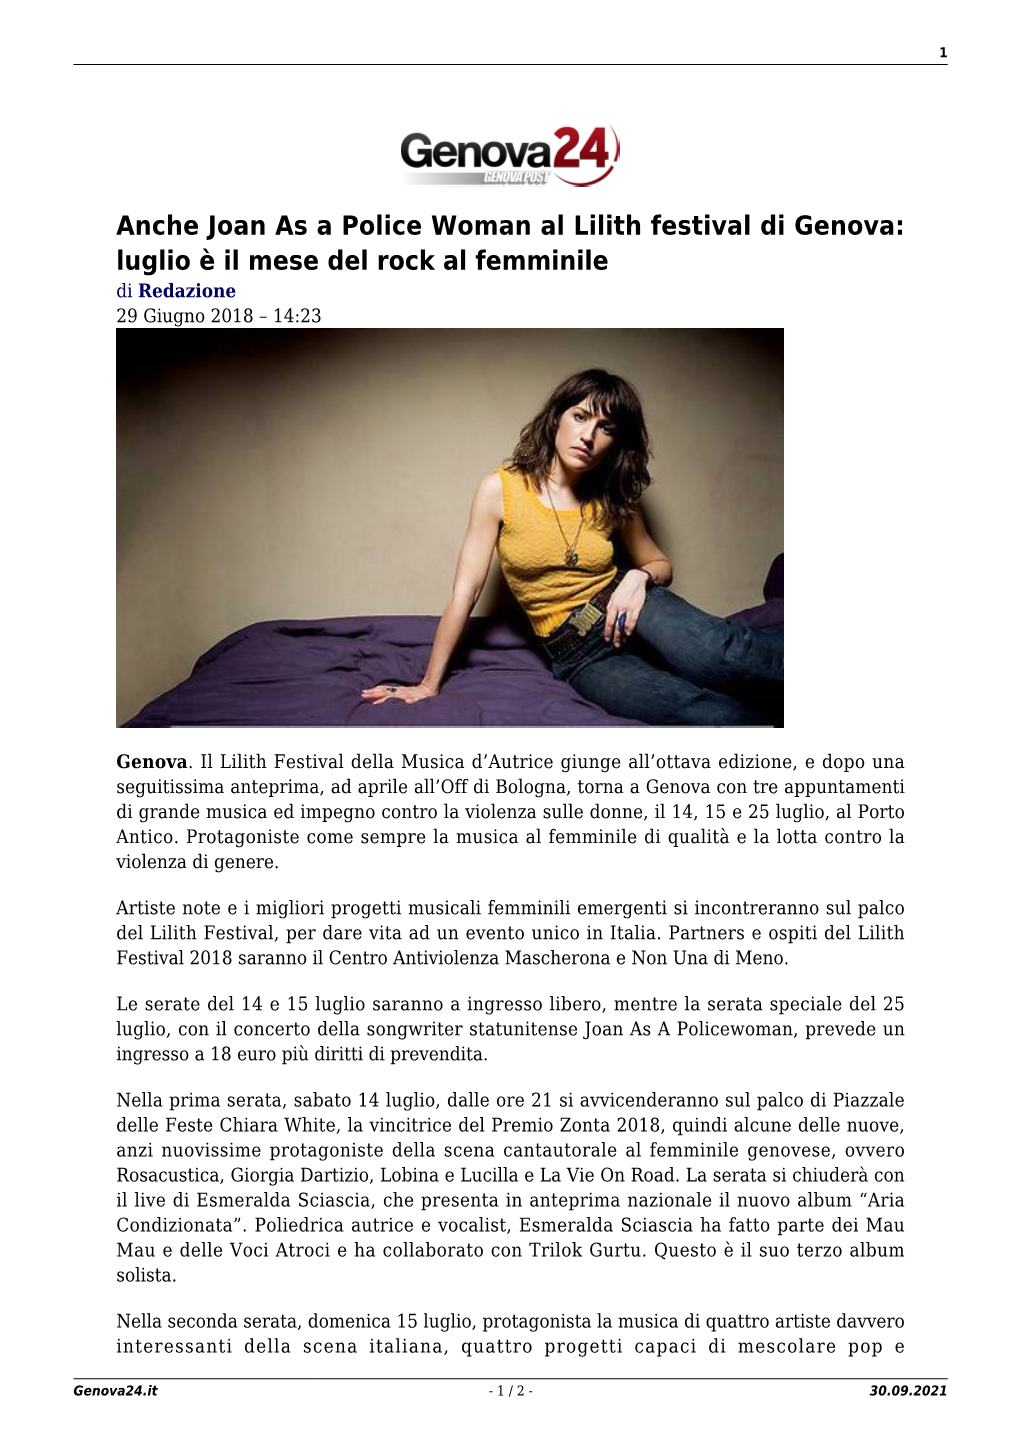 Anche Joan As a Police Woman Al Lilith Festival Di Genova: Luglio È Il Mese Del Rock Al Femminile Di Redazione 29 Giugno 2018 – 14:23